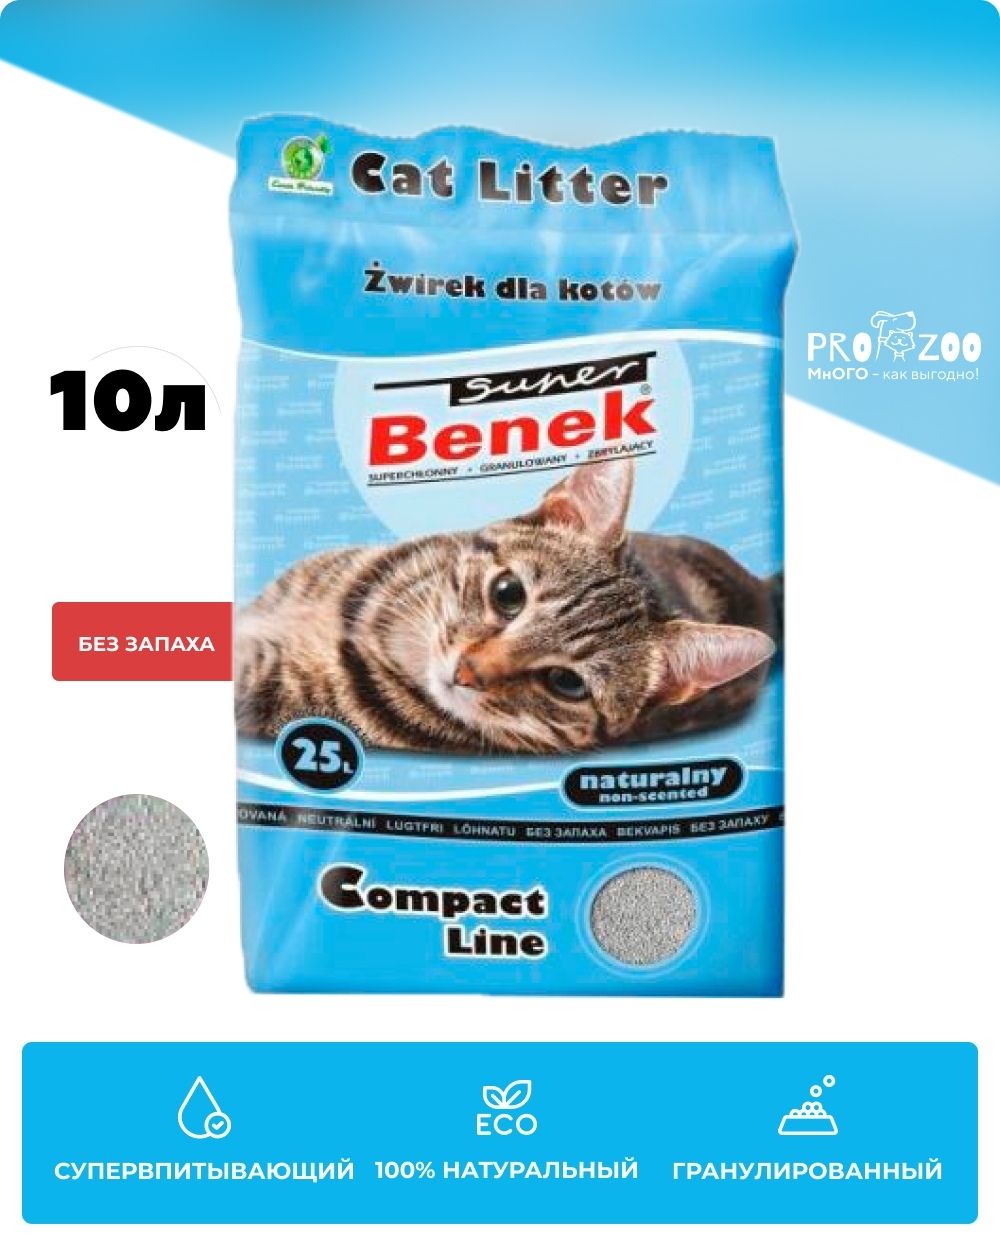 Наполнитель Super Benek для туалета для кошек, компакт, натуральный, 8 кг 1